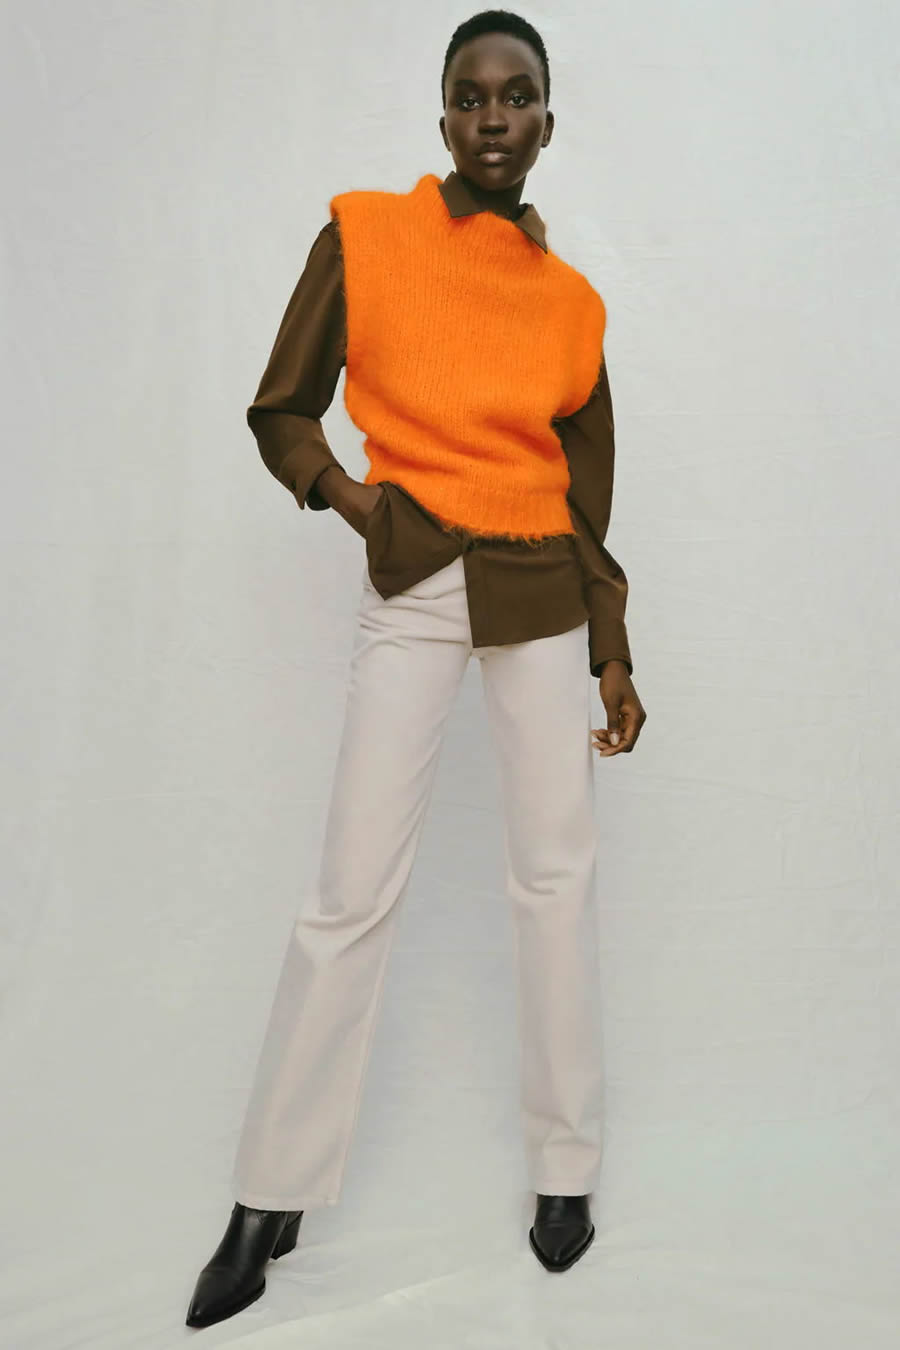 Fashion Orange Knitted Sleeveless Vest,Sweater